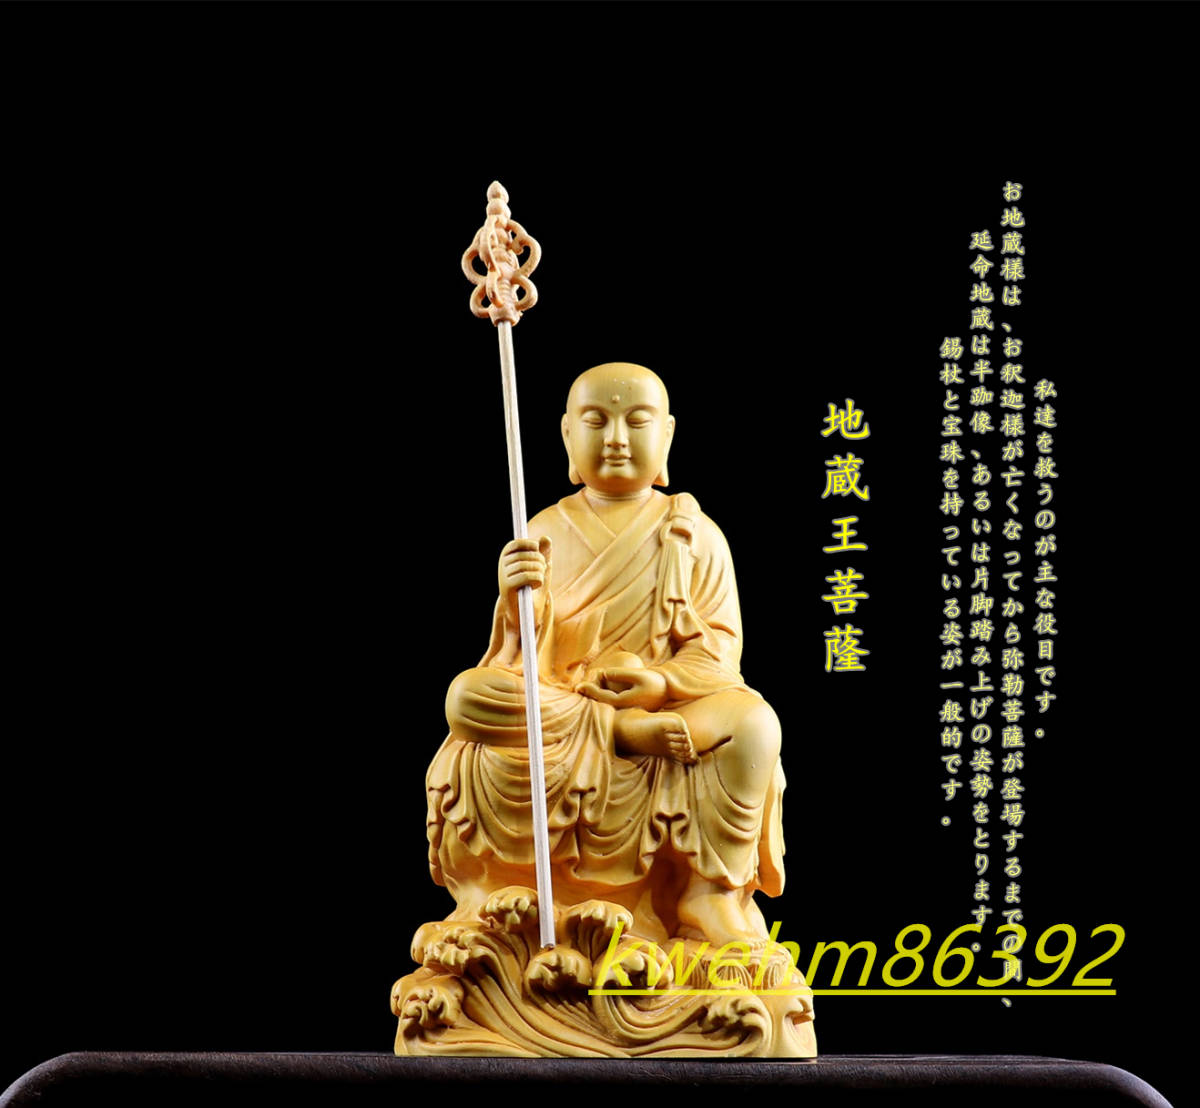 木彫り 地蔵菩薩像 仏像 地蔵 置物 座像 柘植材 仏教工芸品 地蔵菩薩